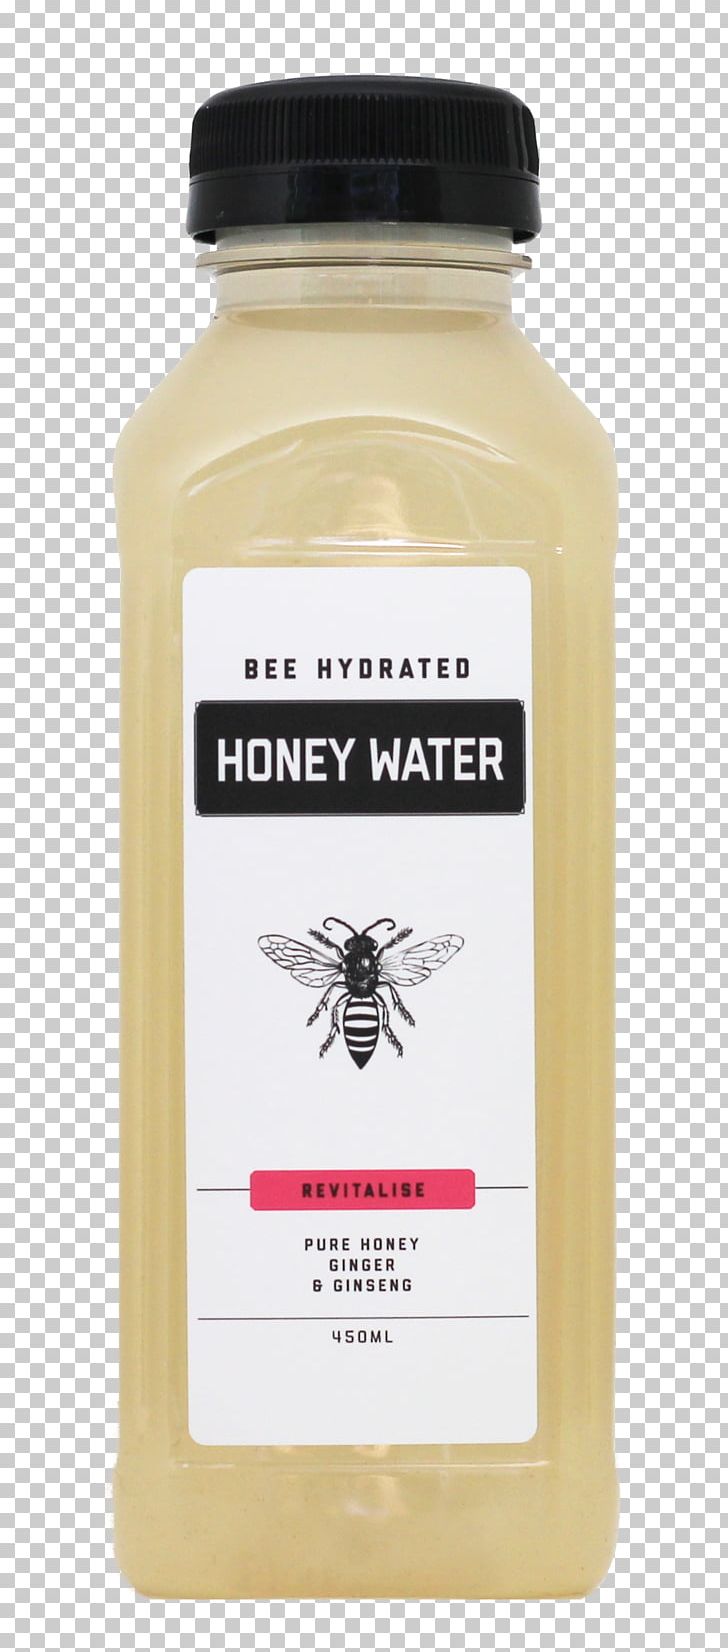 Bee Water Extract Tea Honey PNG, Clipart, Bee, Cinnamon, Drink, Extract, Flavor Free PNG Download